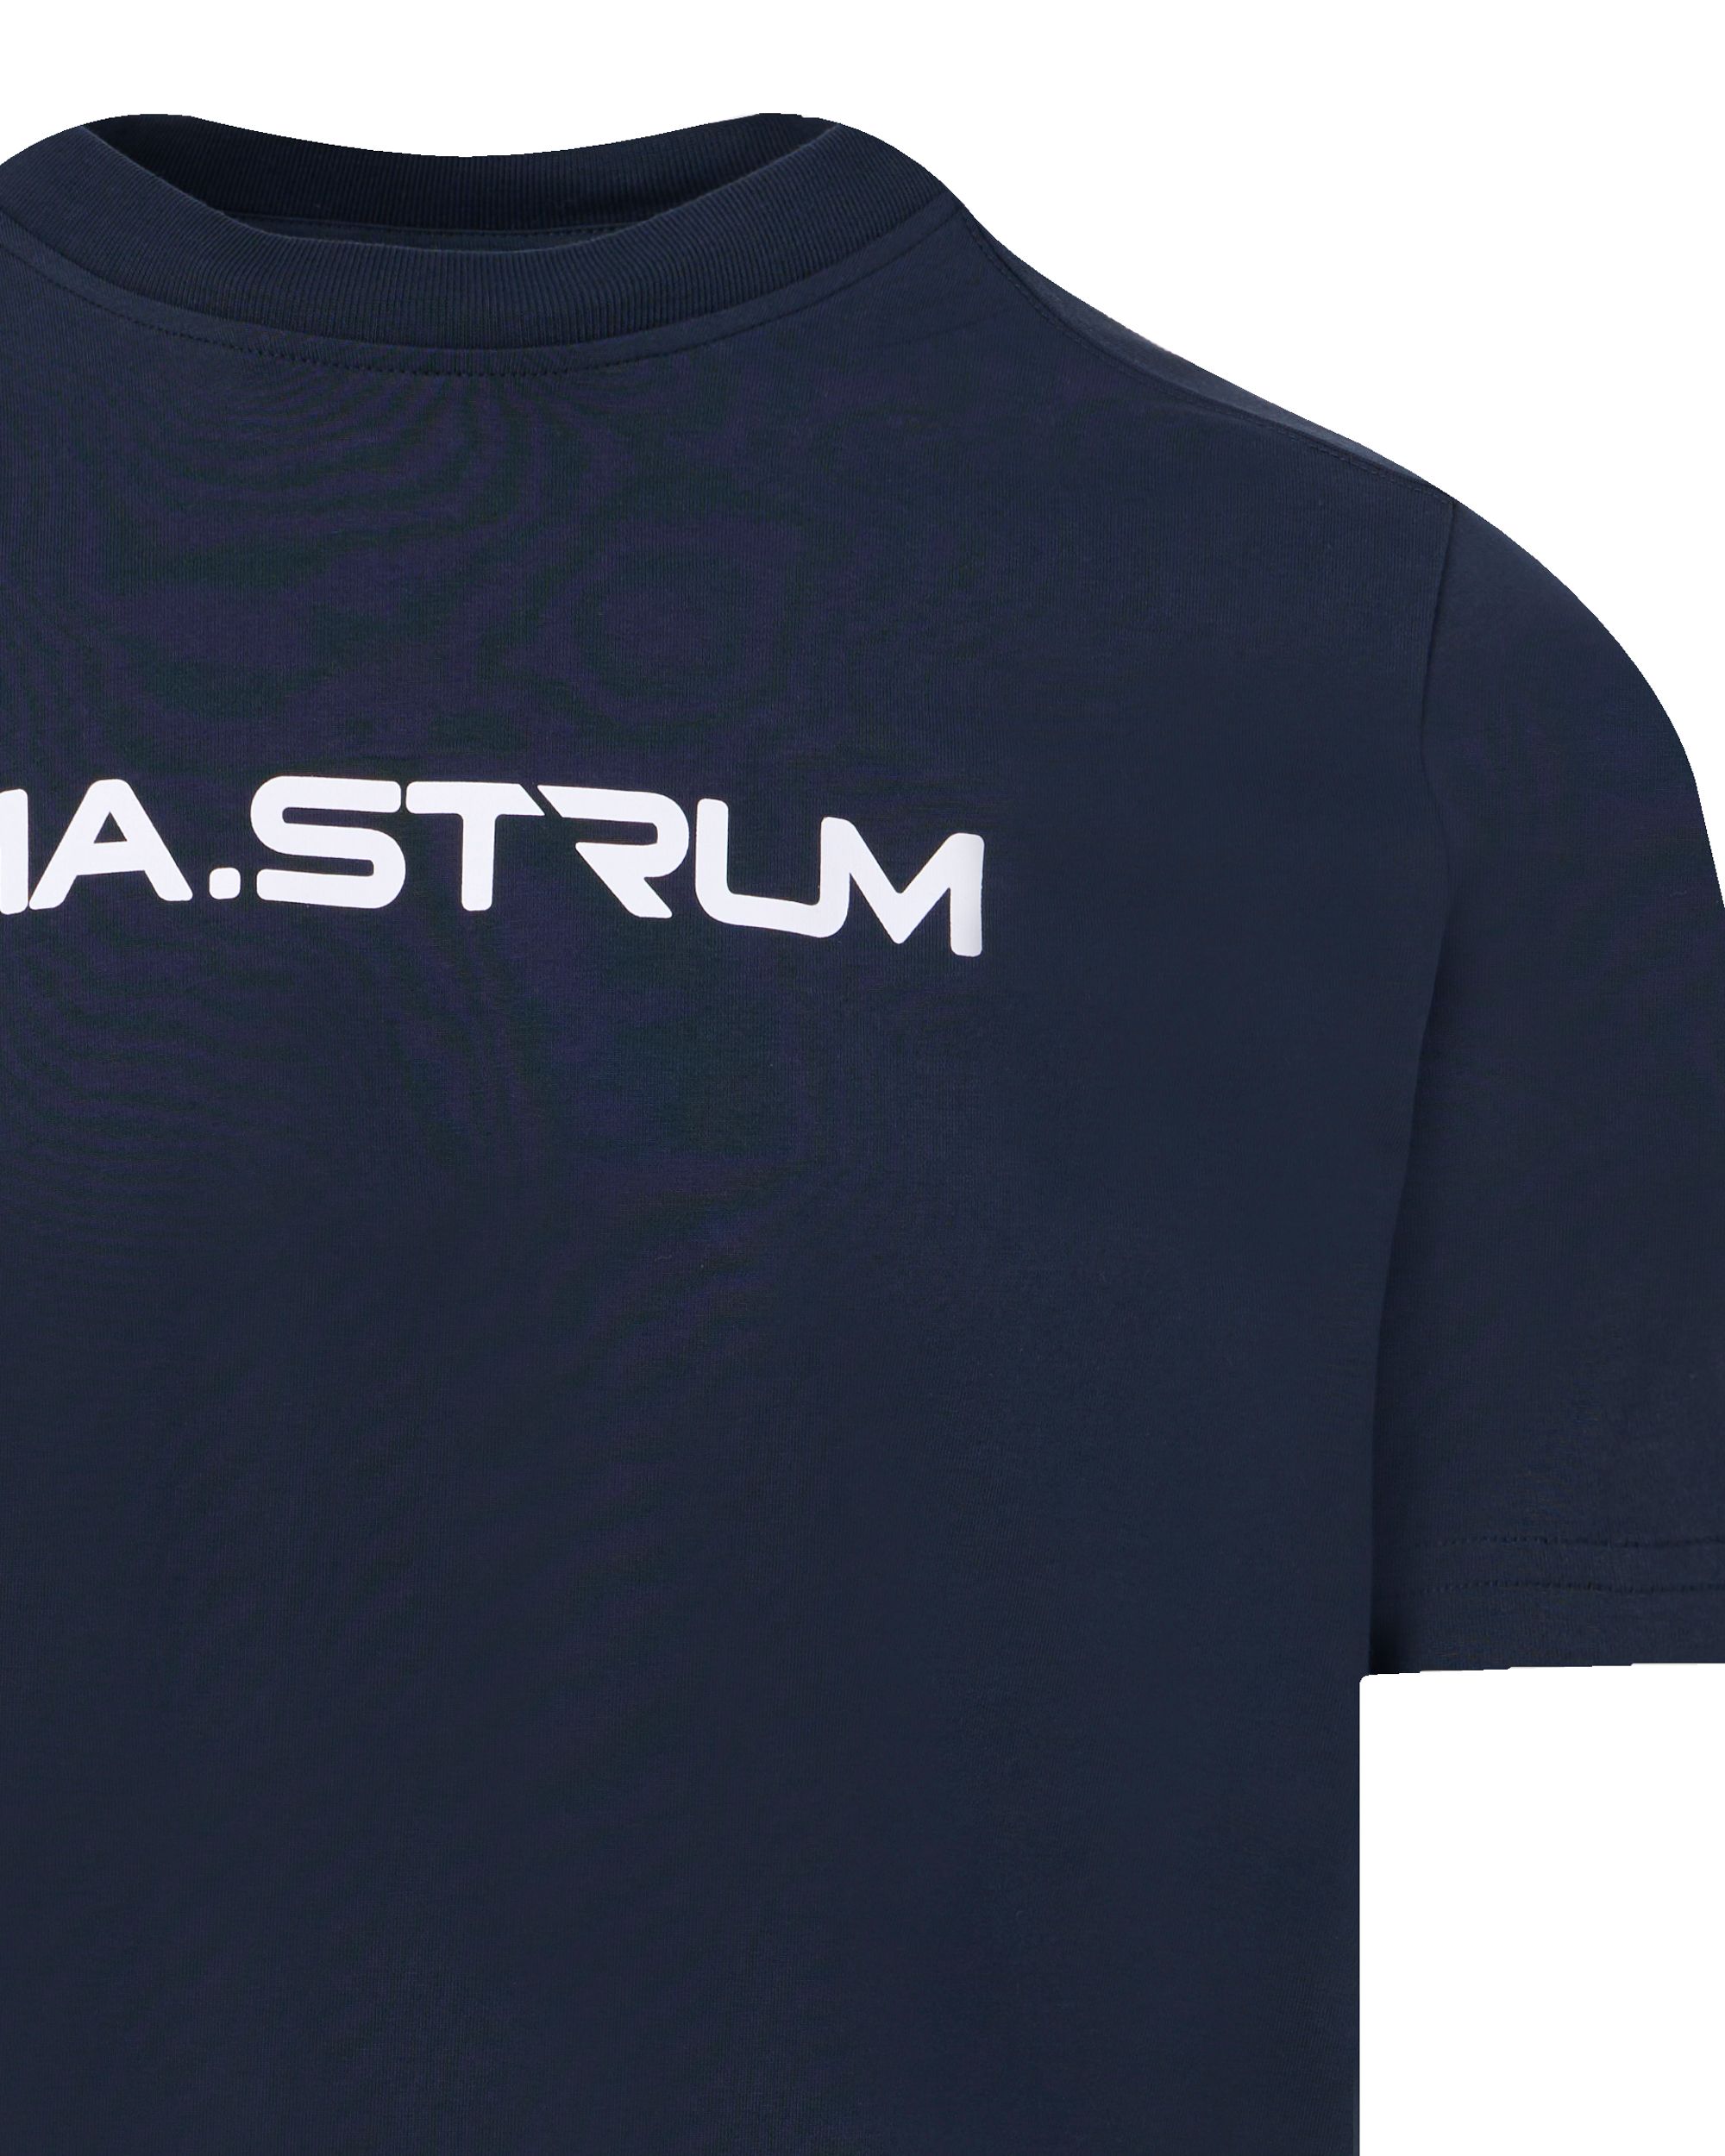 MA.STRUM T-shirt KM Donker blauw 093297-001-L